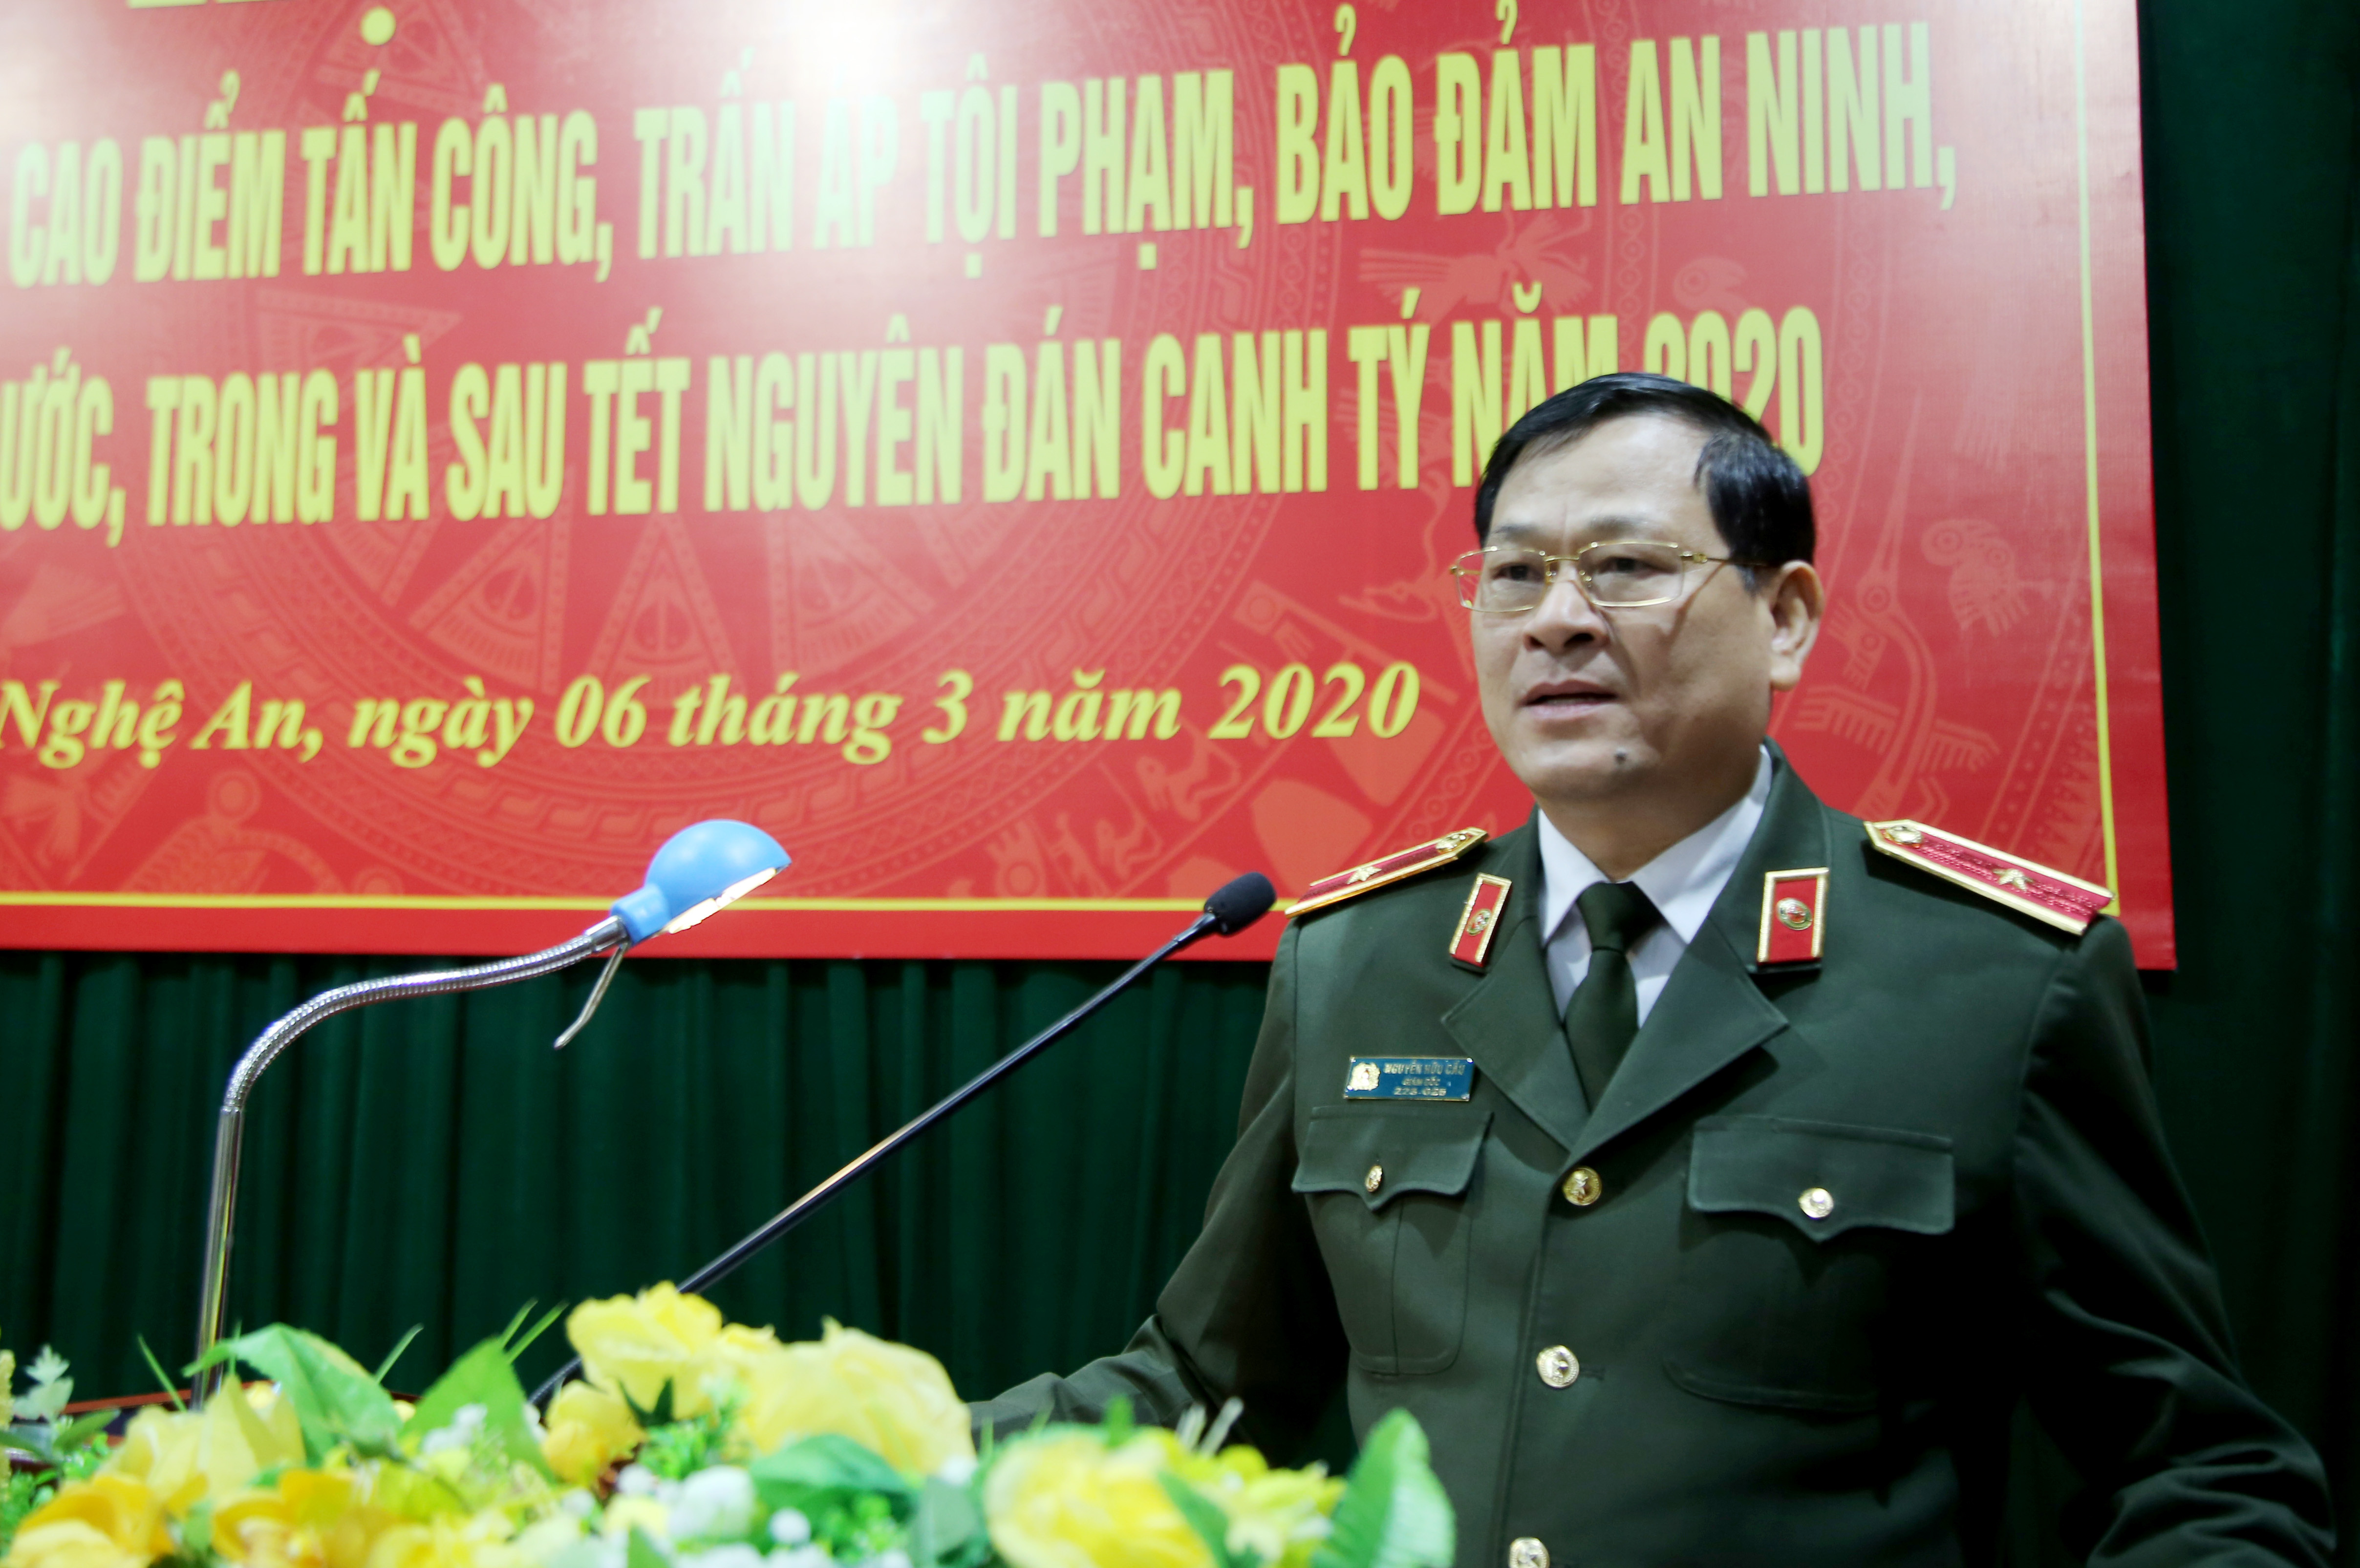 Thiếu tướng Nguyễn Hữu Cầu phát biểu tại hội nghị. Ảnh: Đức Vũ - Mạnh Cường